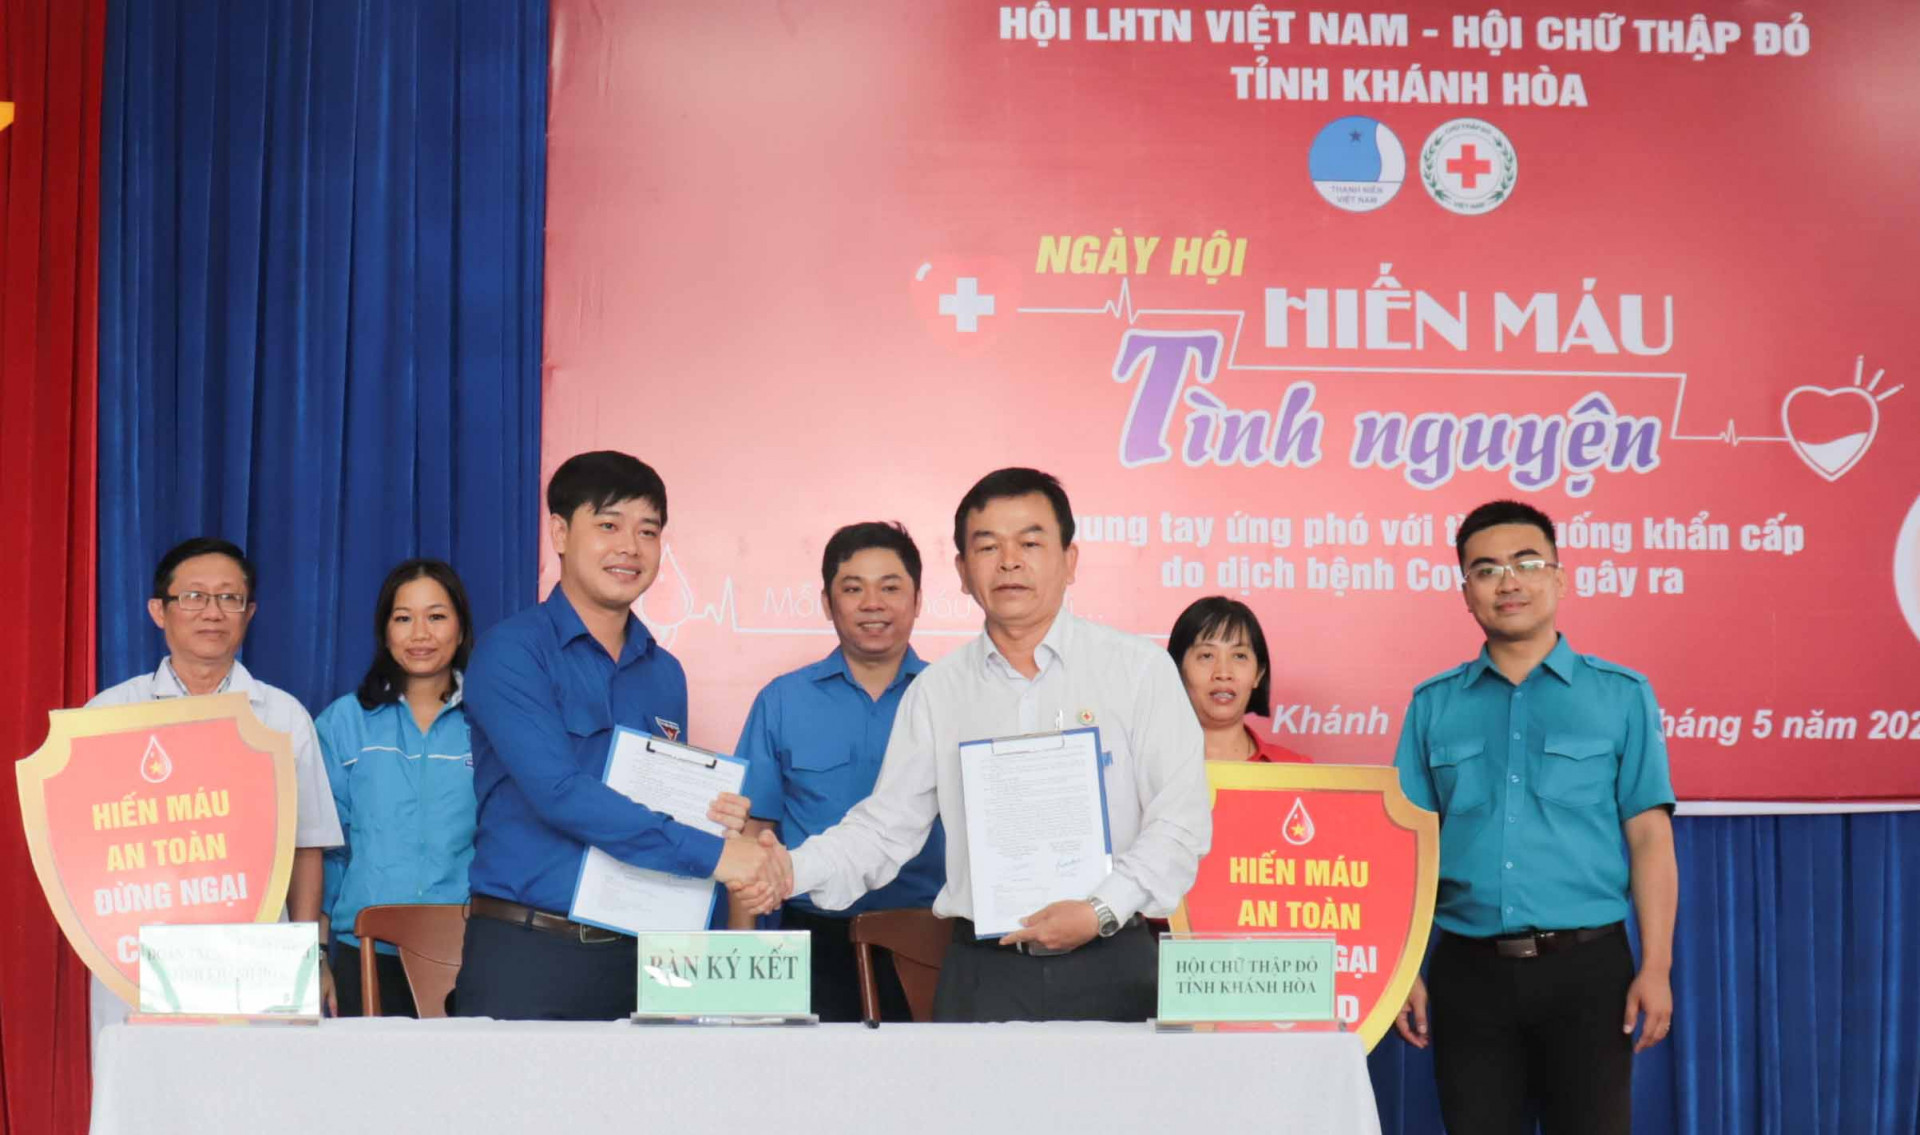 Lãnh đạo Hội LHTN Việt Nam tỉnh và Hội Chữ thập đỏ tỉnh ký kết chương trình phối hợp hành động